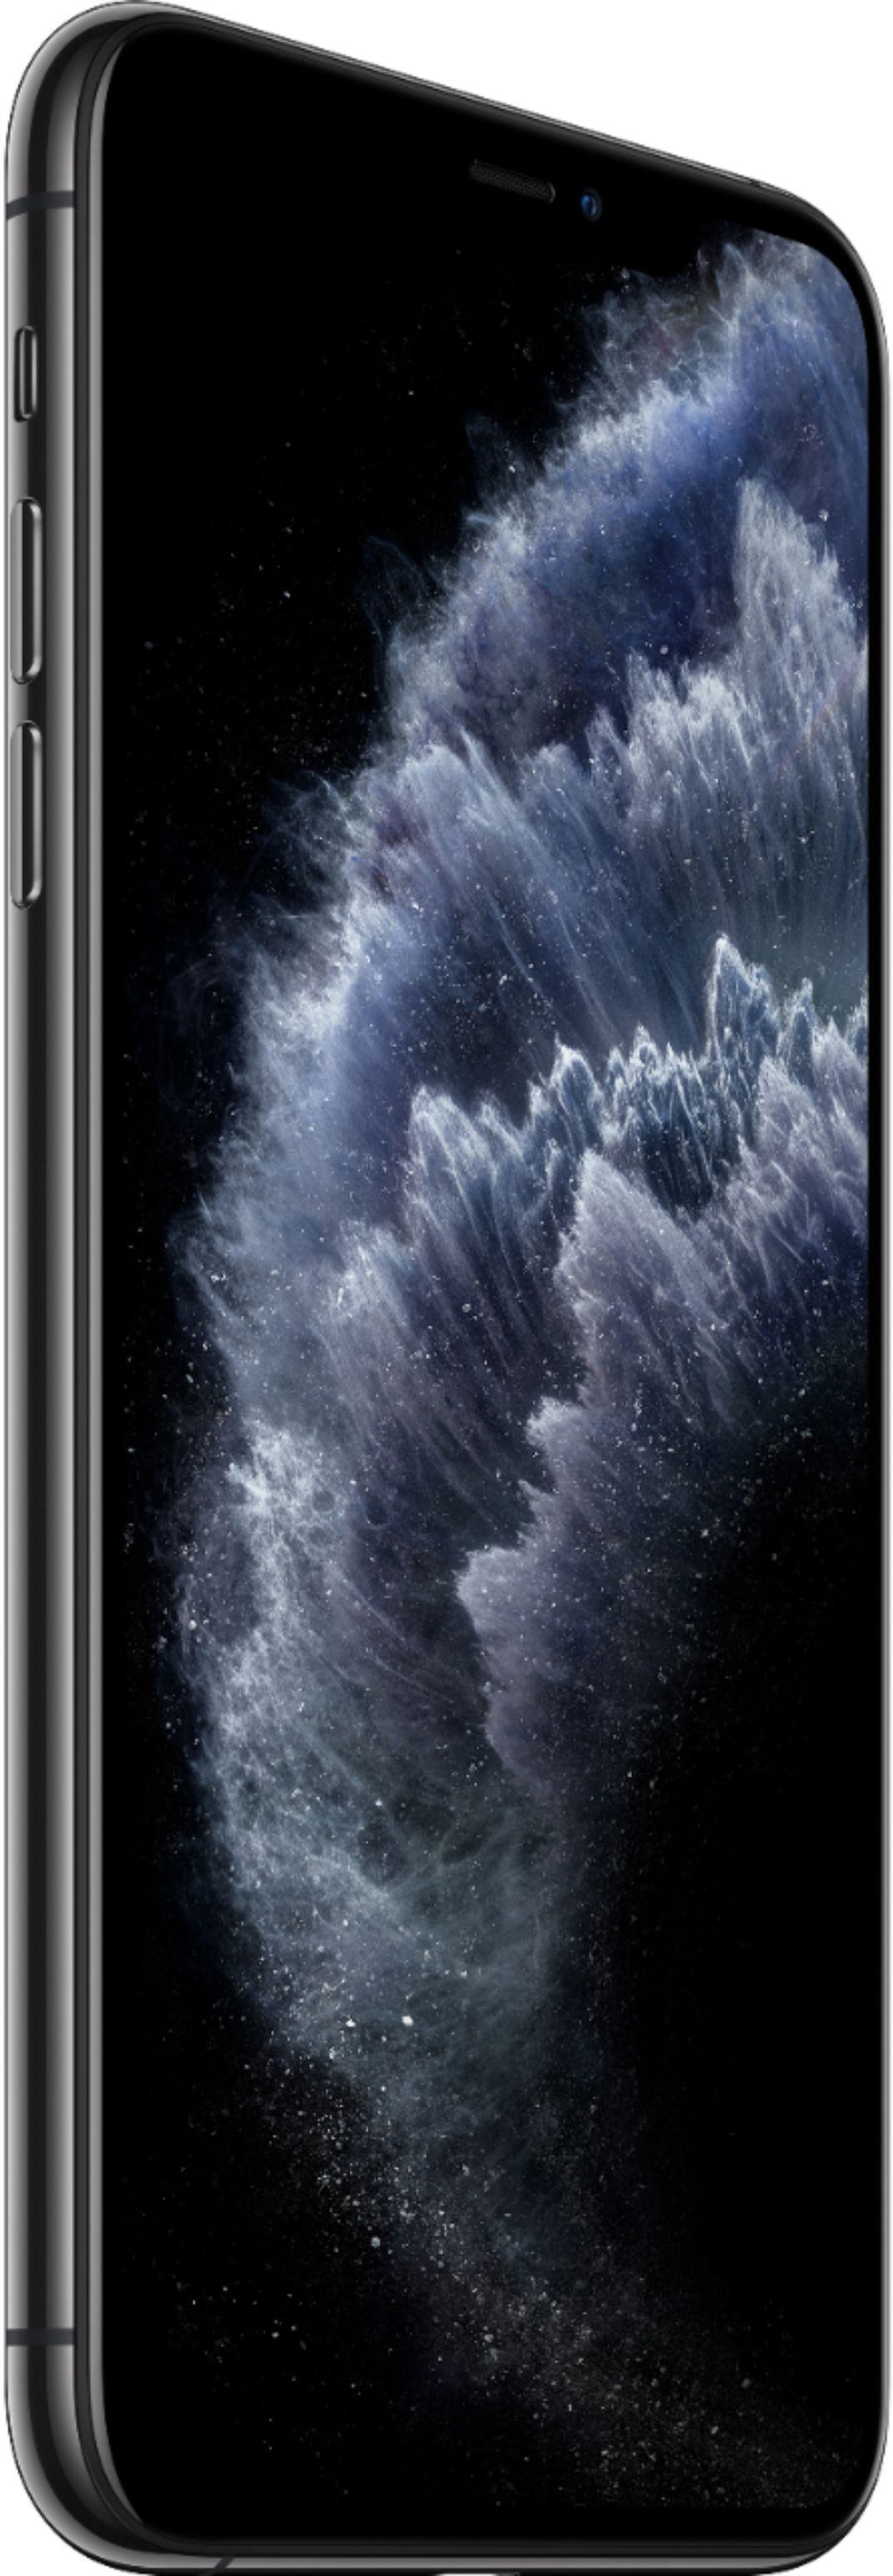 Best Buy: Apple iPhone 11 Pro Max 256GB (Unlocked) MWGK2LL/A